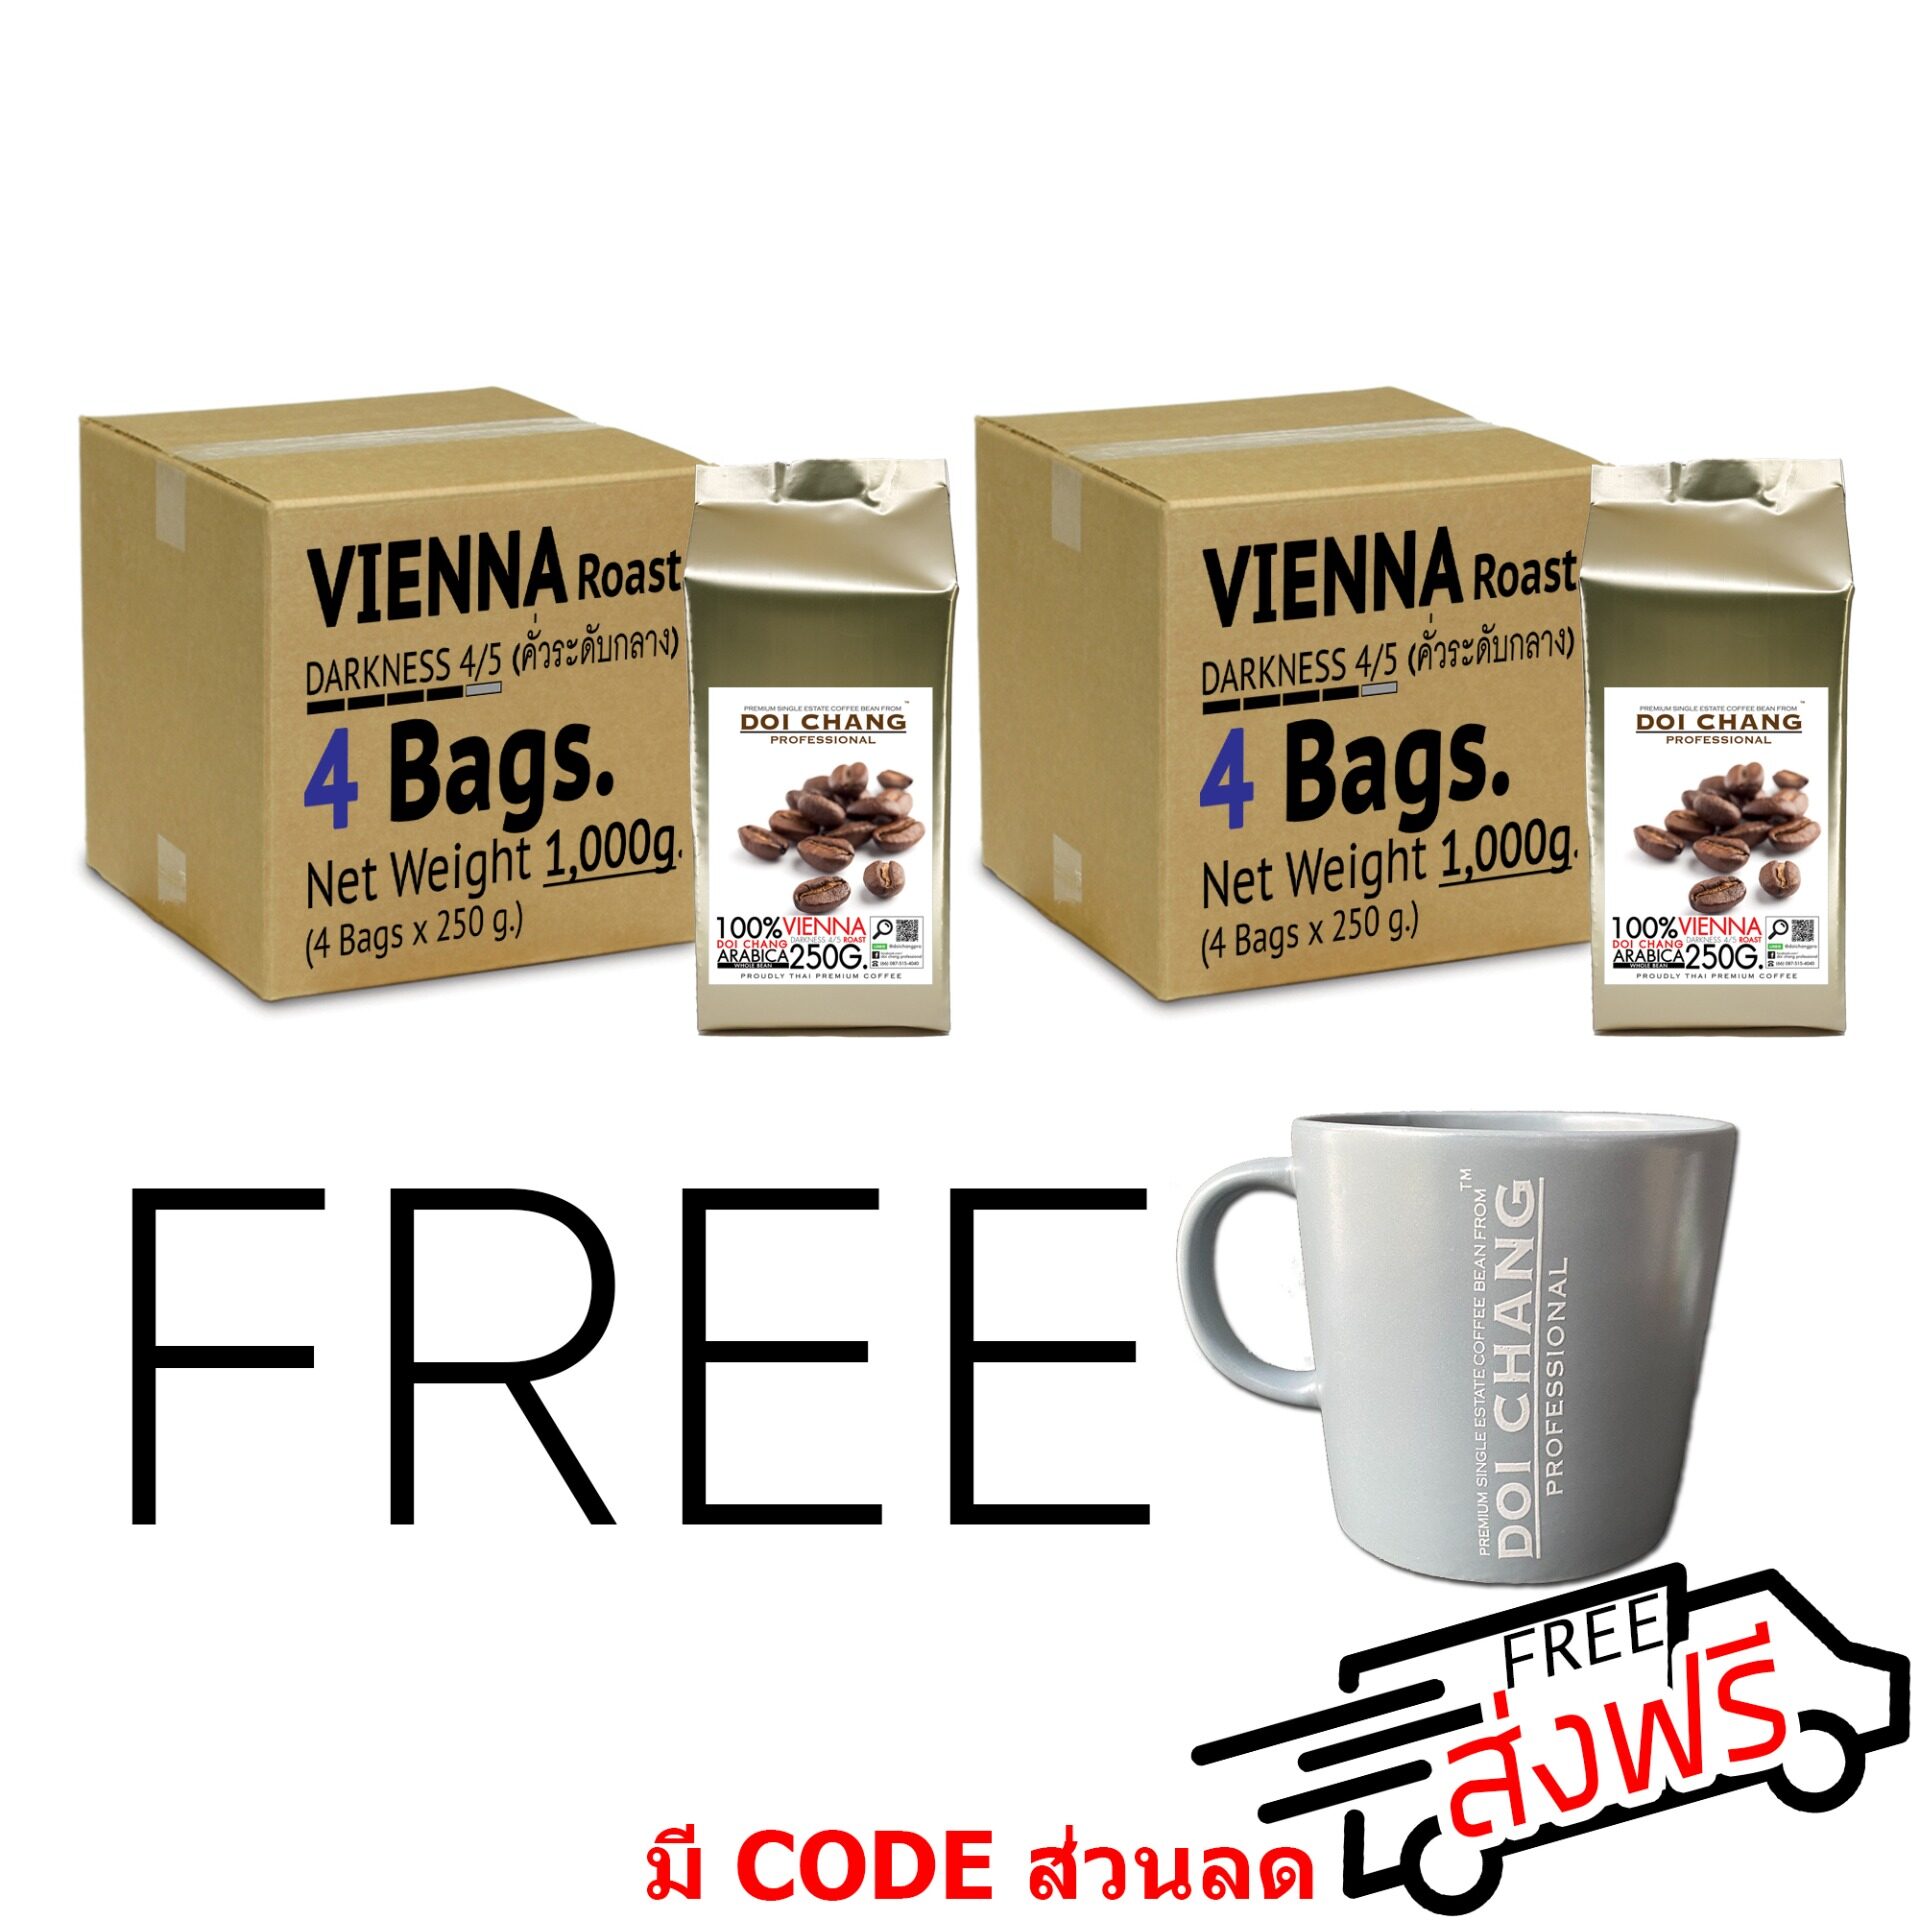 เมล็ดกาแฟ คั่วกลาง Vienna 2 kgs. (8×250g) แถม แก้วกาแฟ แบบเมล็ดDoi Chang Professional Roasted Coffee Whole Bean เมล็ดกาแฟ จาก เมล็ดกาแฟดอยช้าง (กาแฟสด)